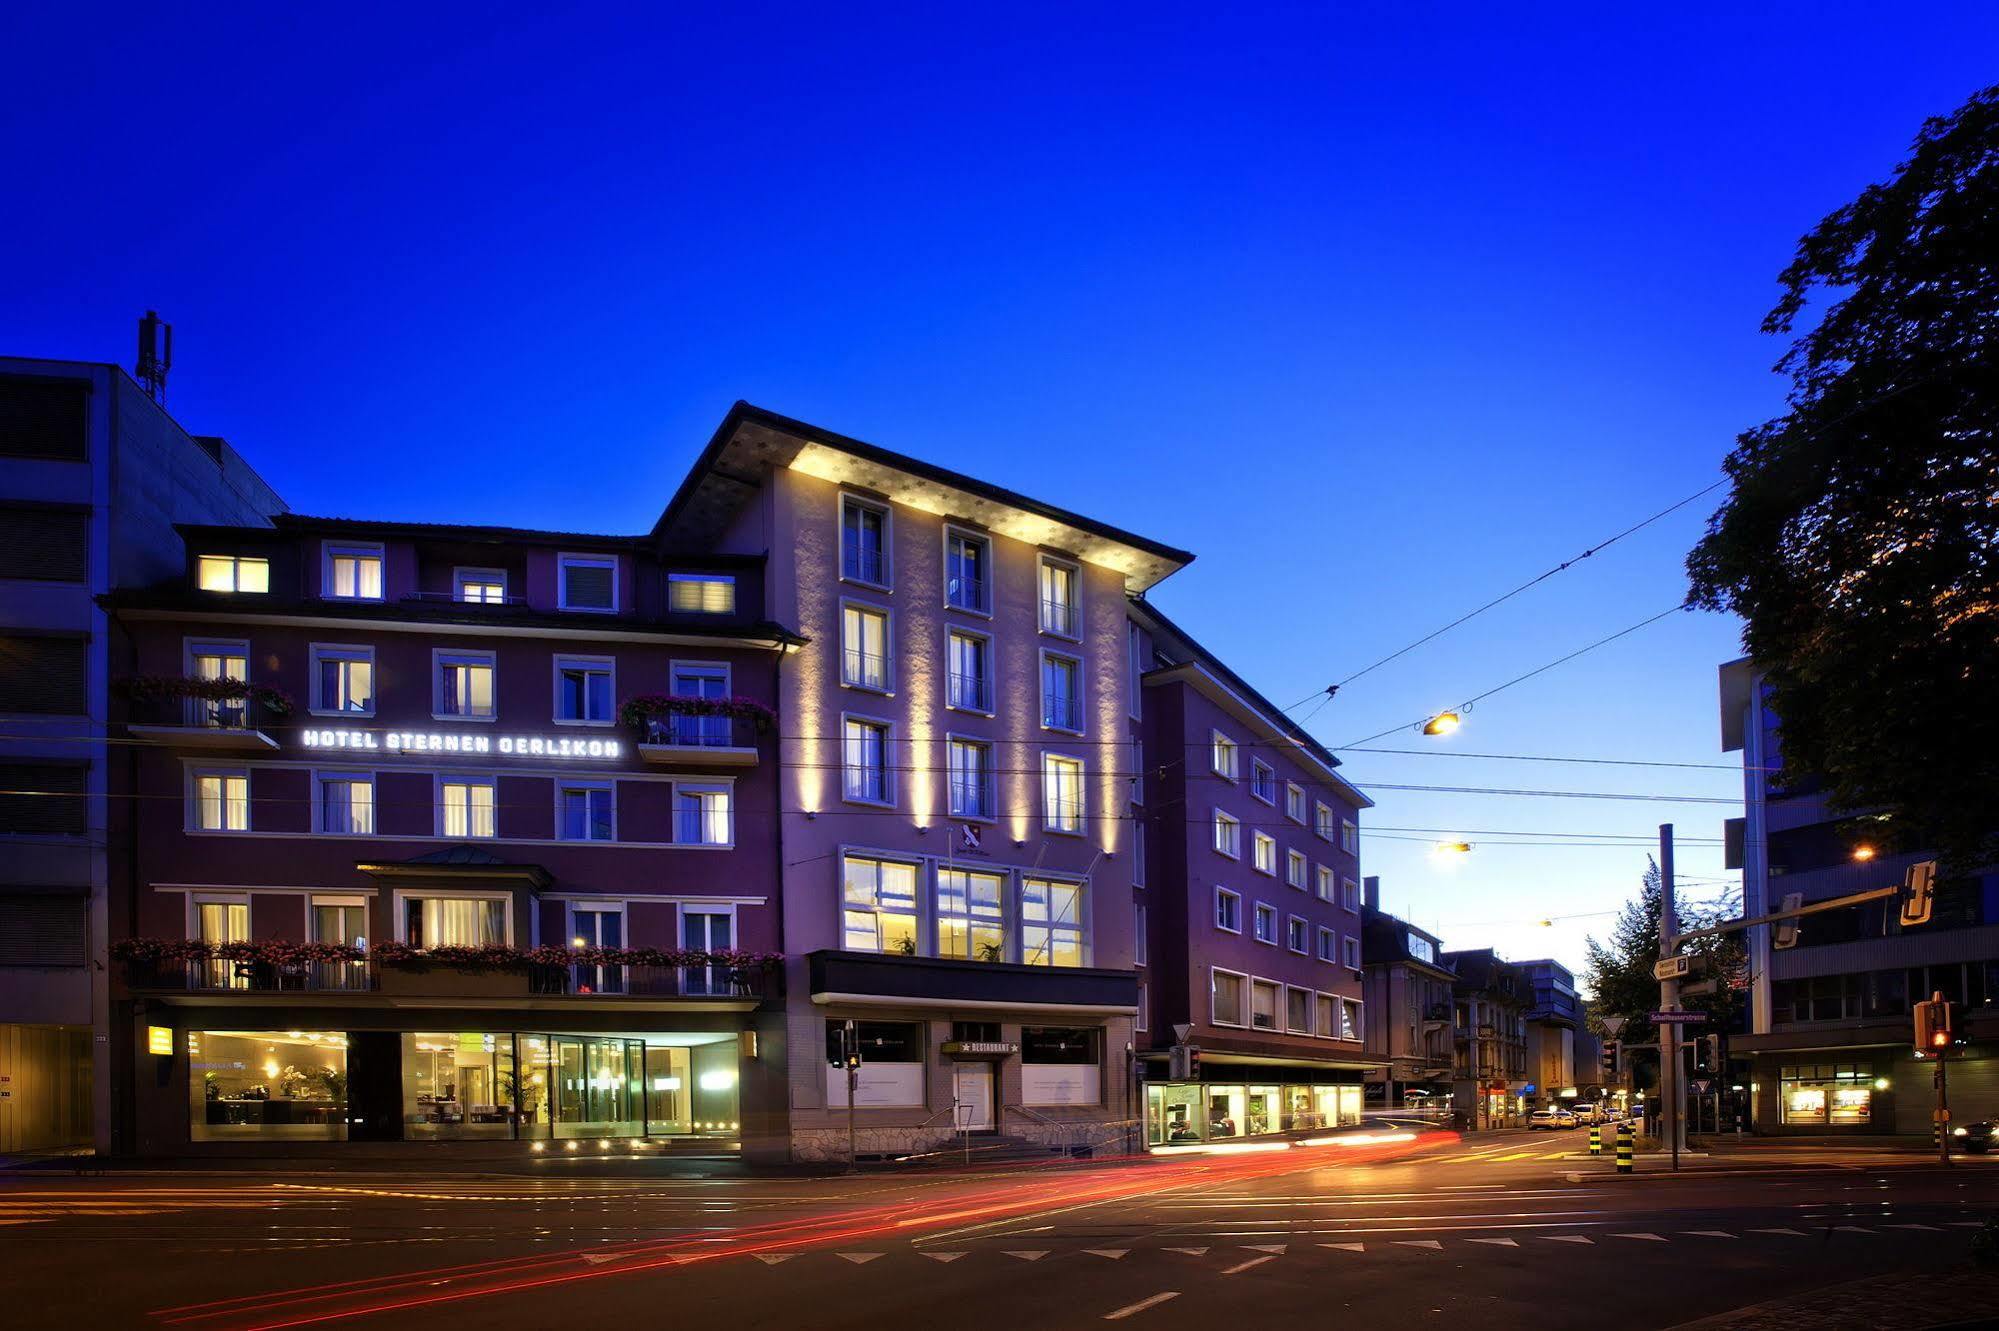 Hotel Sternen Oerlikon Zurich Extérieur photo